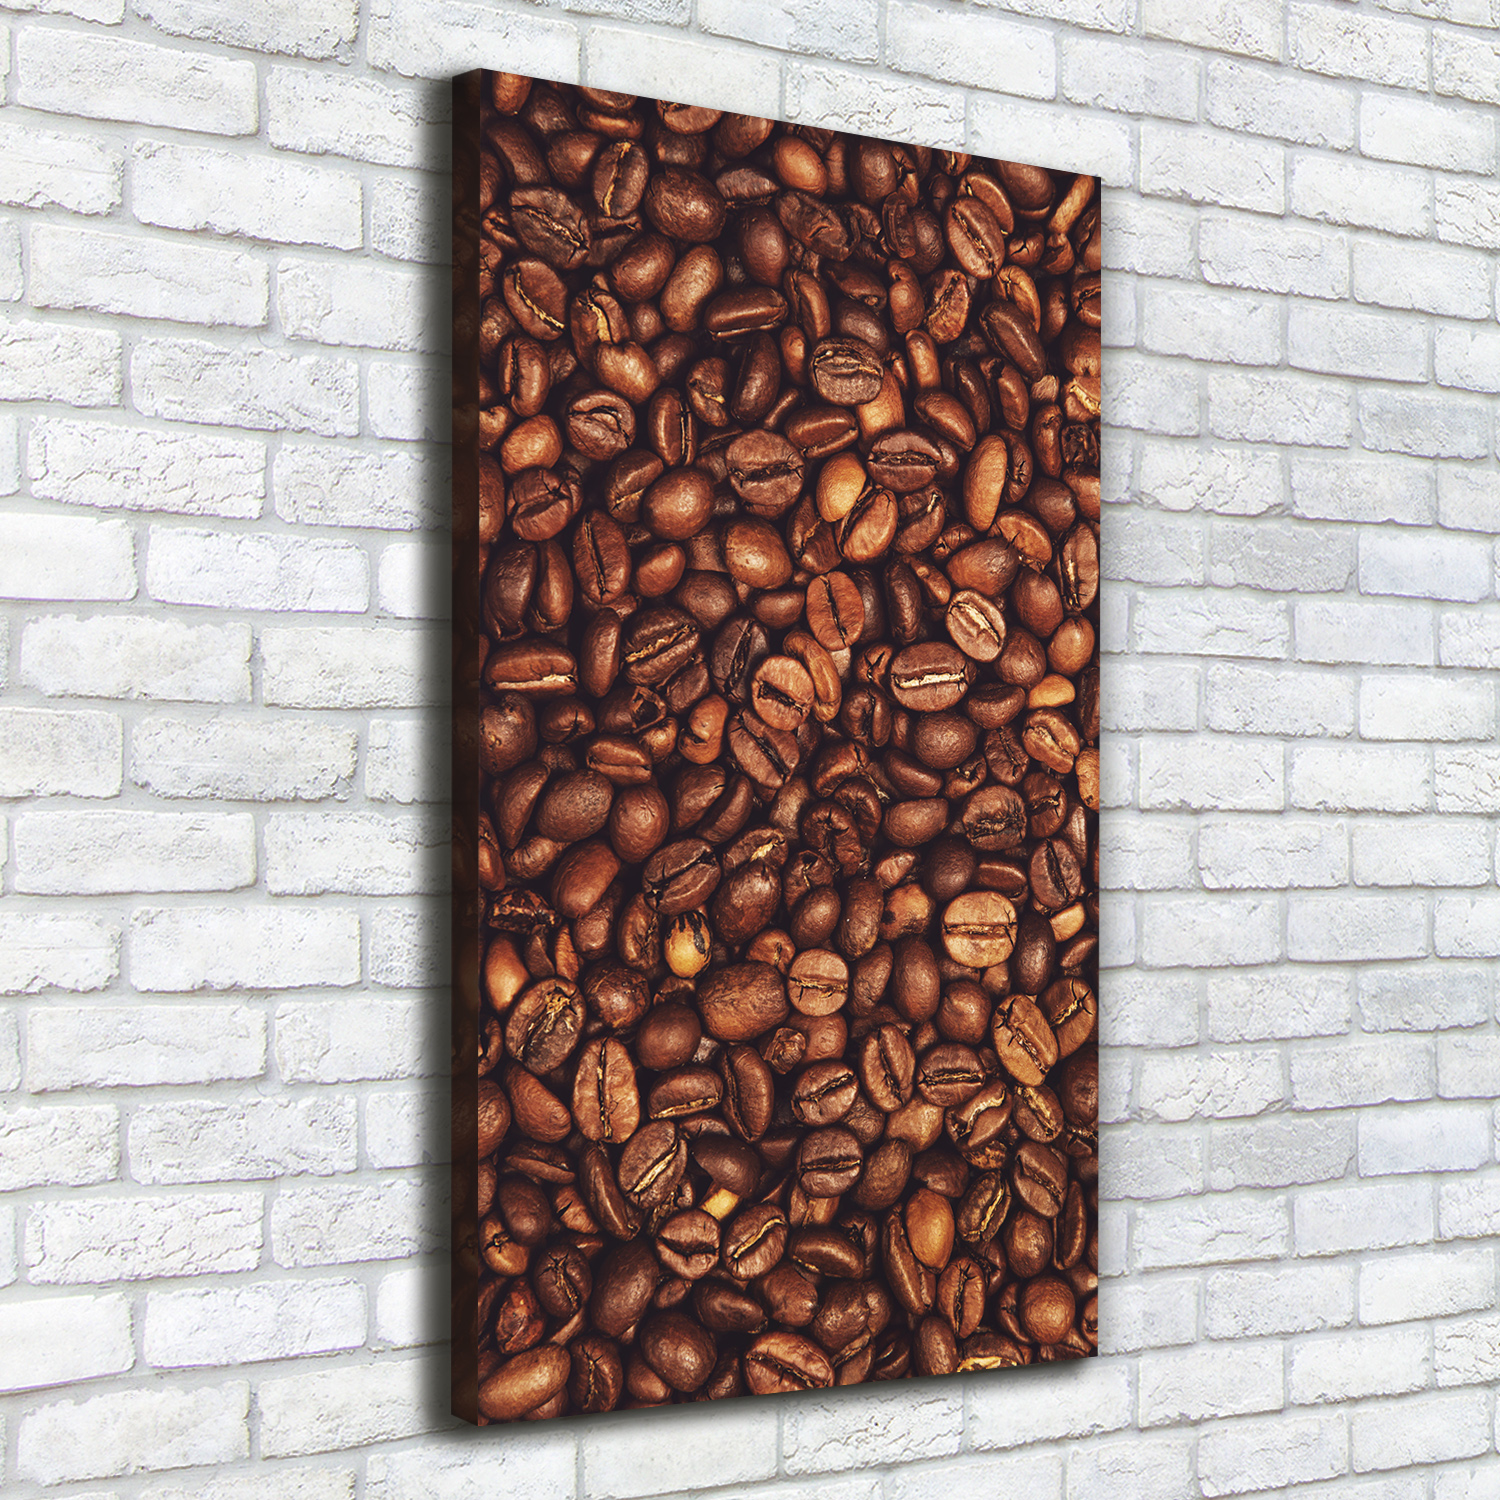 Leinwand-Bild Kunstdruck Hochformat 50x100 Bilder Kaffeebohnen